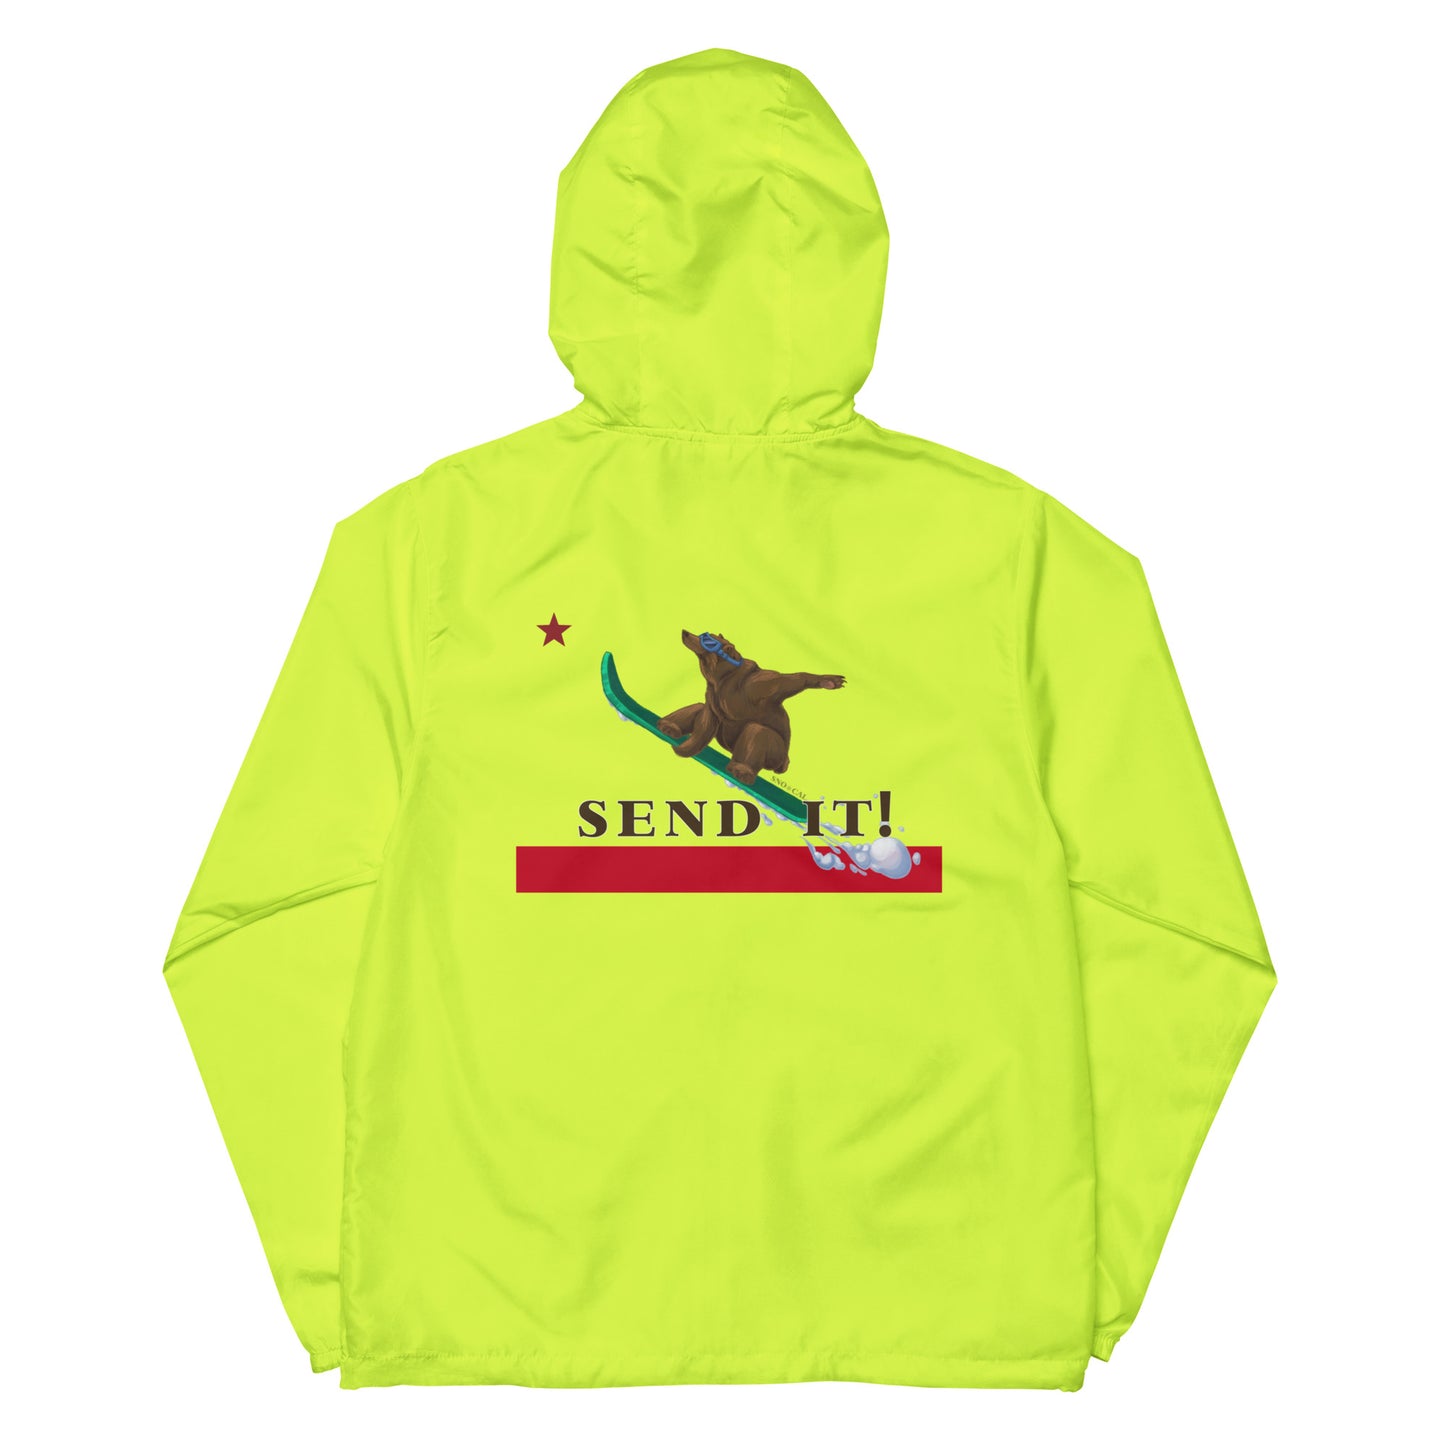 neon windbreaker snowboard jacket